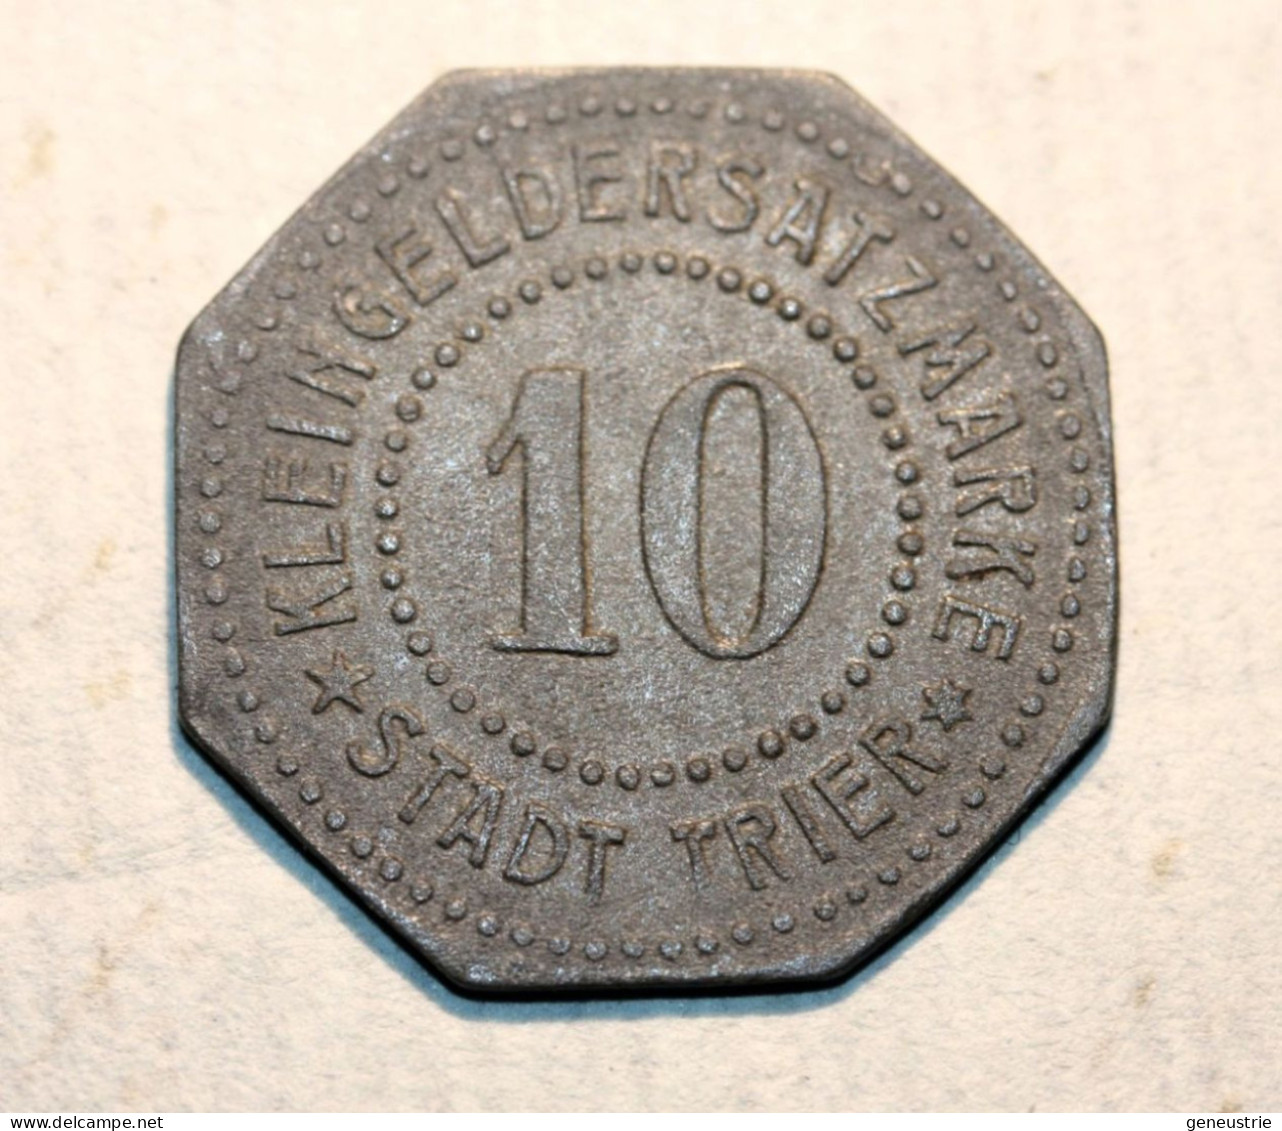 WWI Monnaie Jeton De Necessité De La Ville De Trêves "10 Stadt Trier" German Emergency Token WW1 - Monetary/Of Necessity